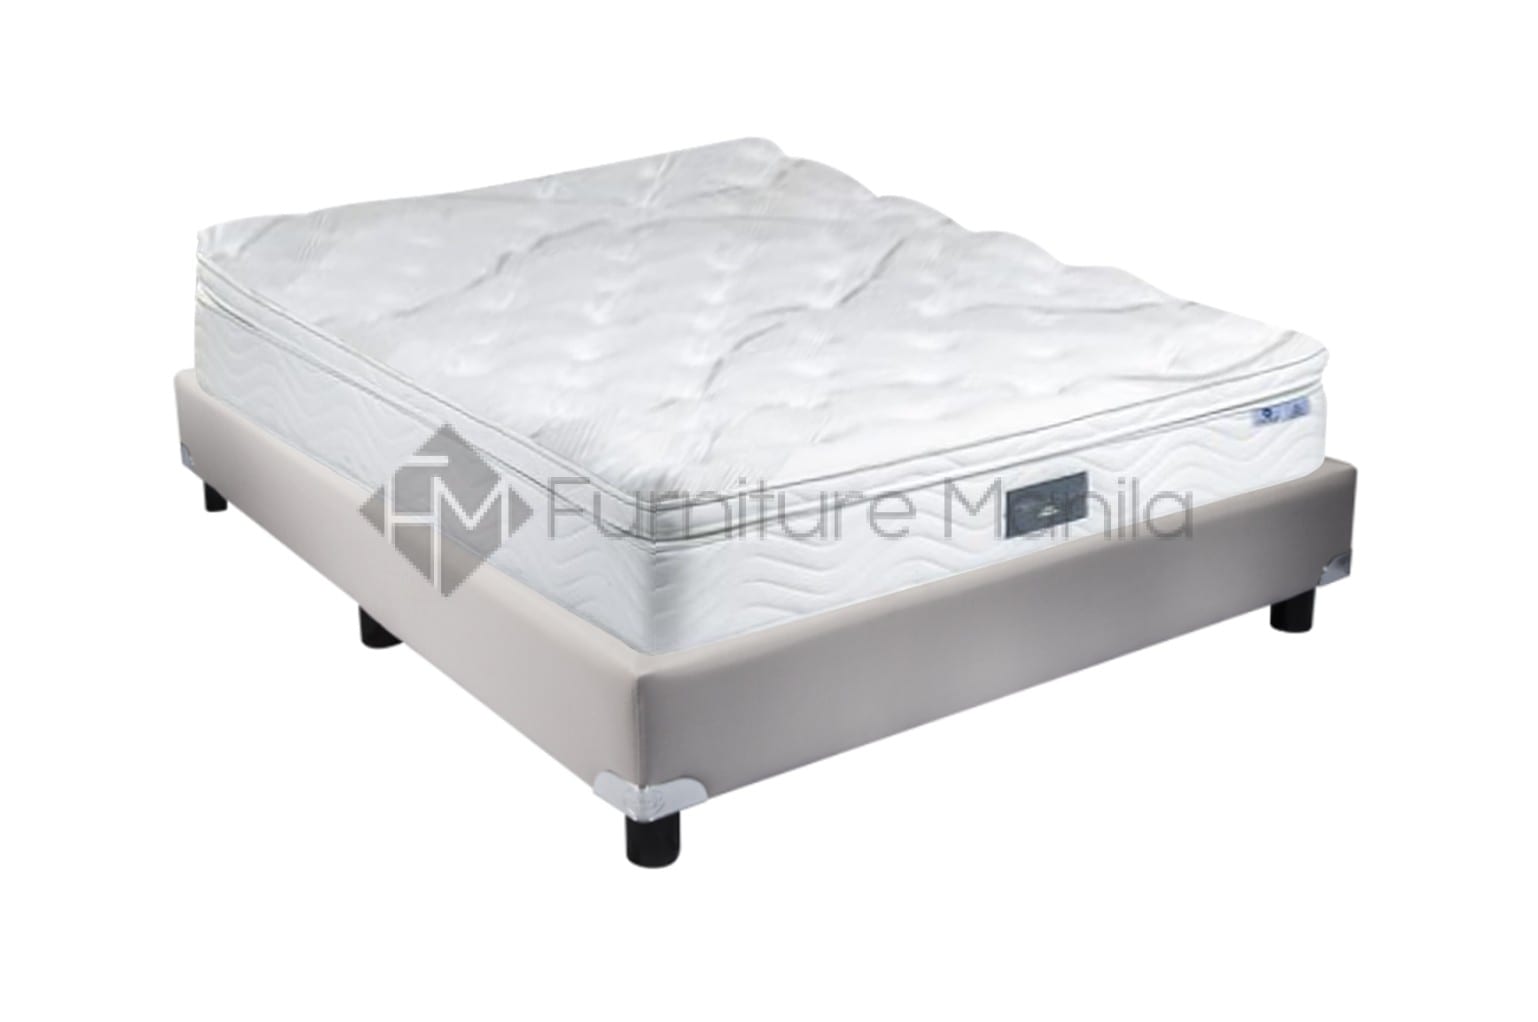 uratex purifoam crib mattress